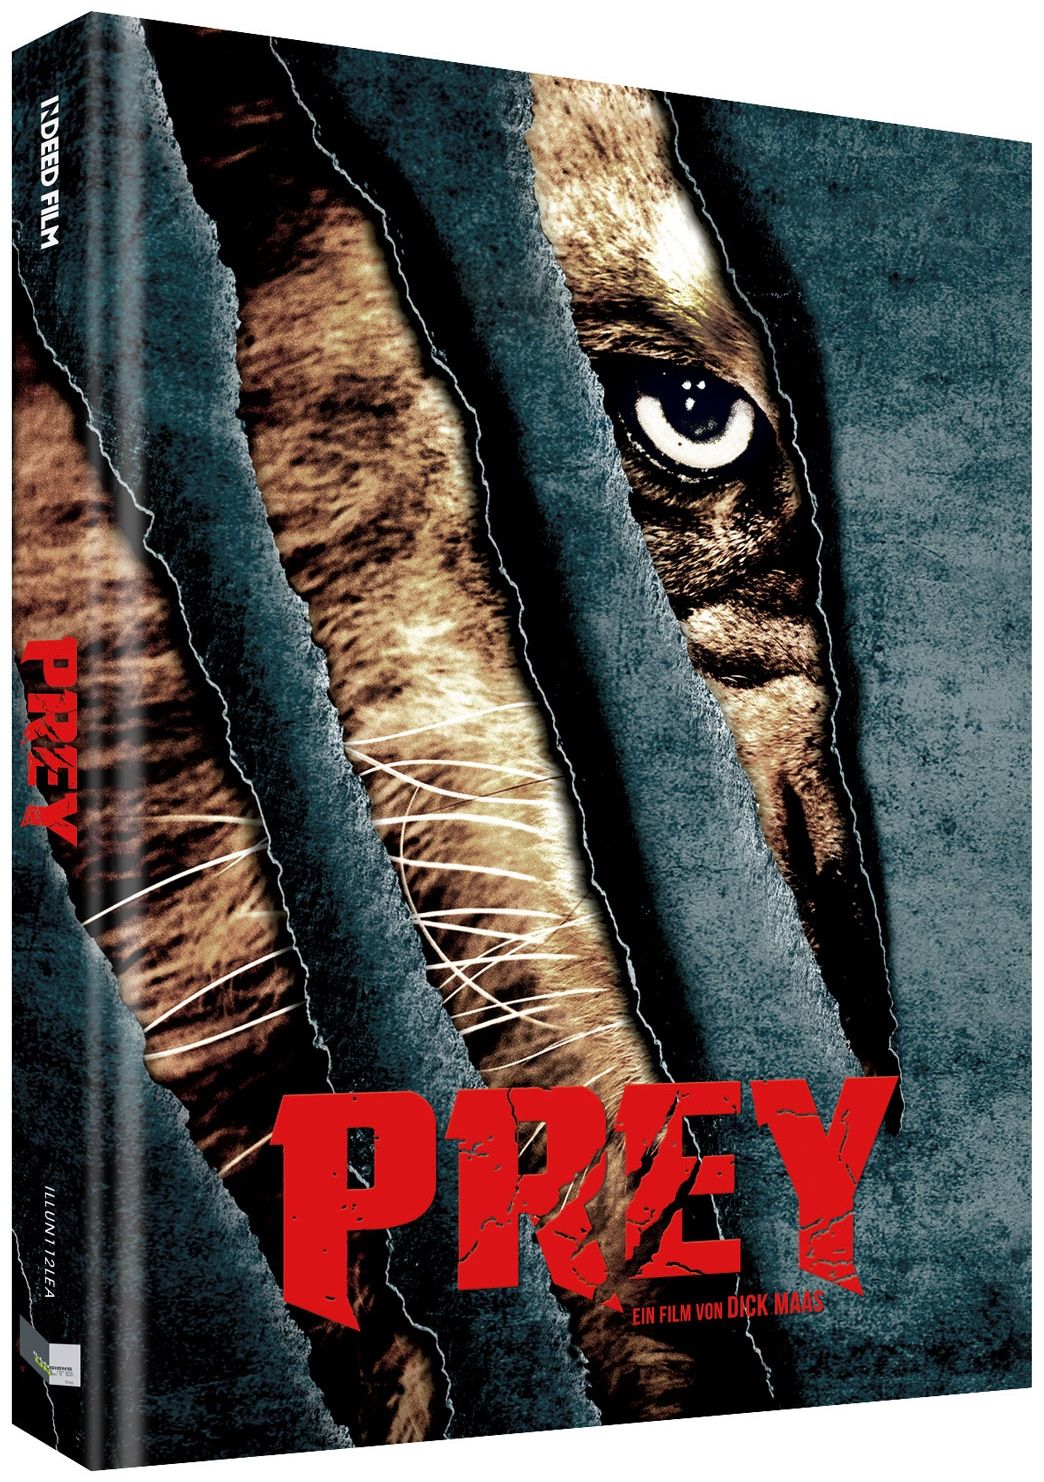 Prey - Beutejagd (Lim. Uncut Mediabook - Cover A) (DVD + BLURAY)